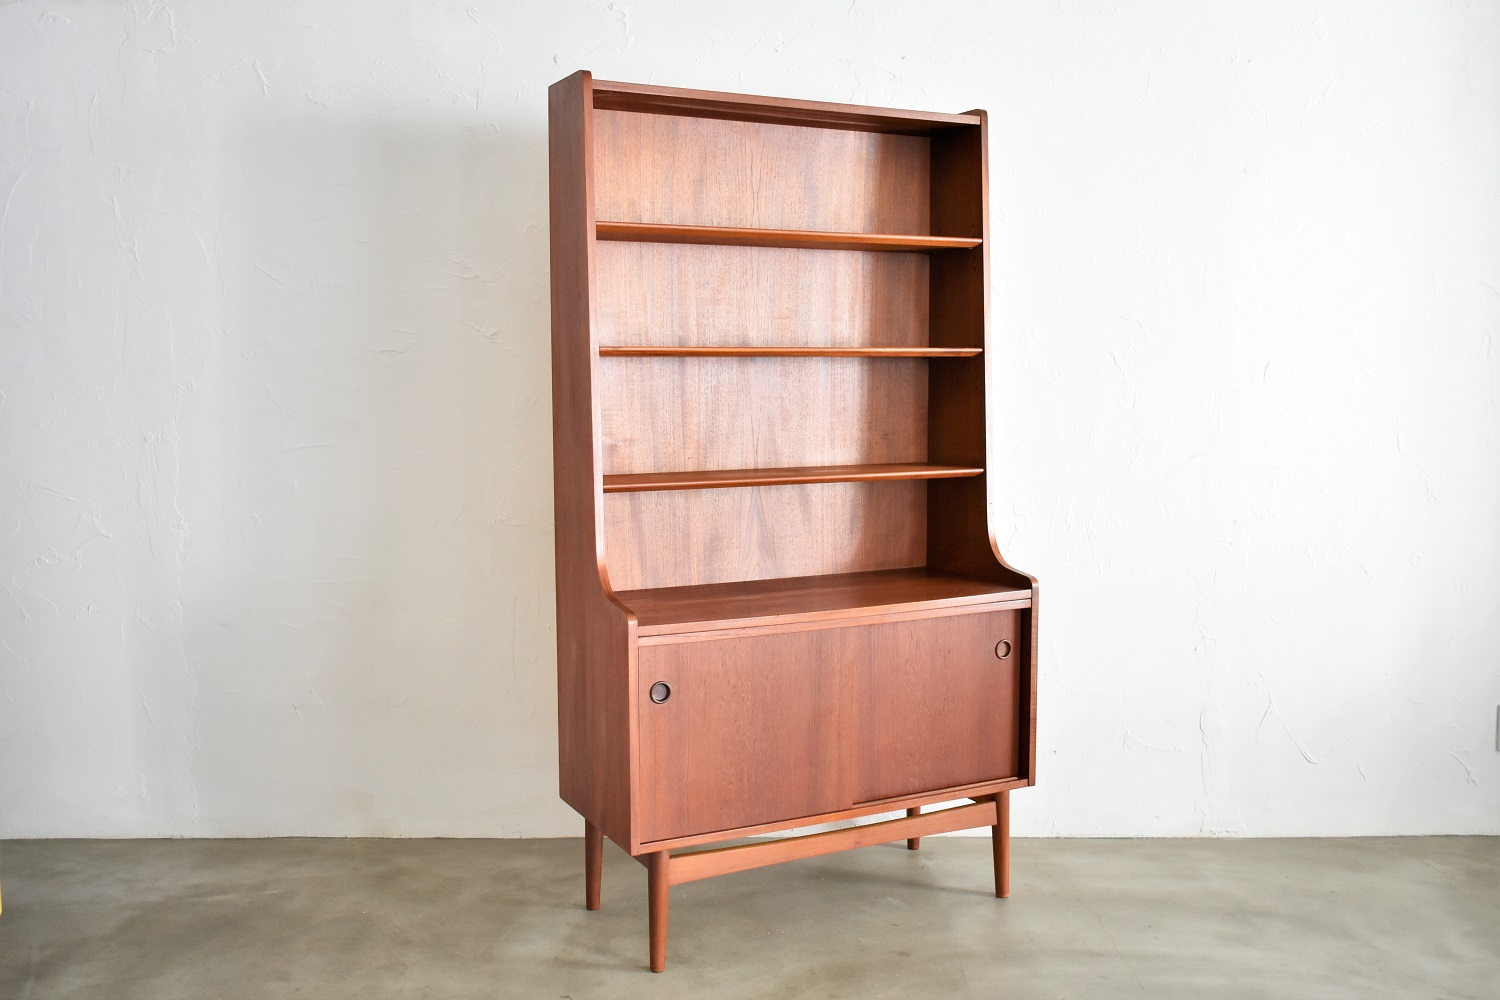 Johannes Sorth / Book shelf